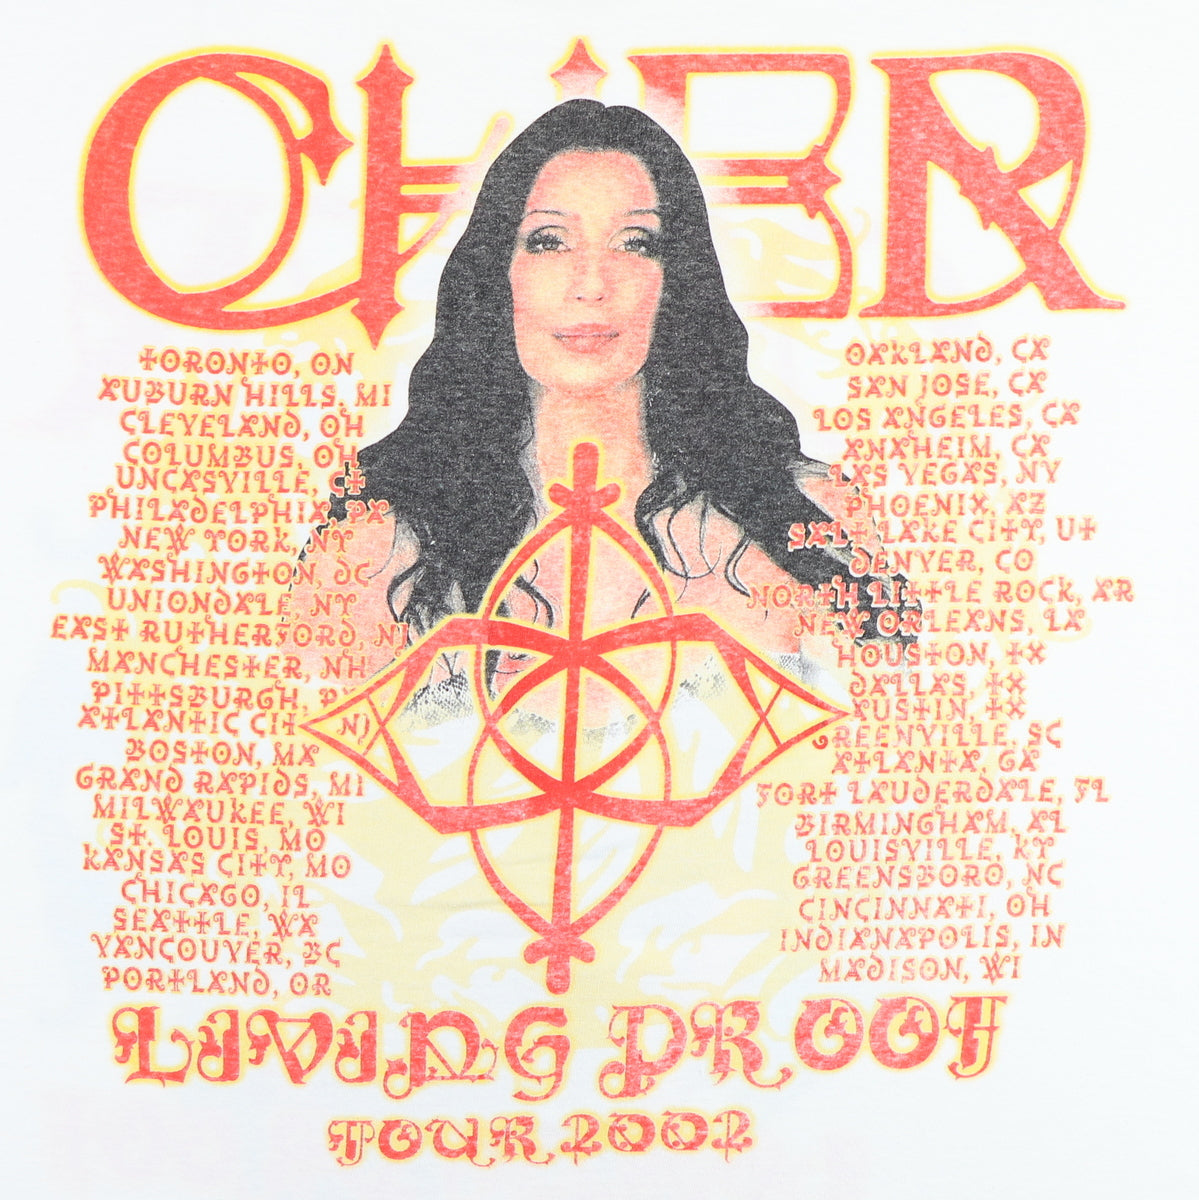 2002 Cher Living Proof Farewell Tour Shirt